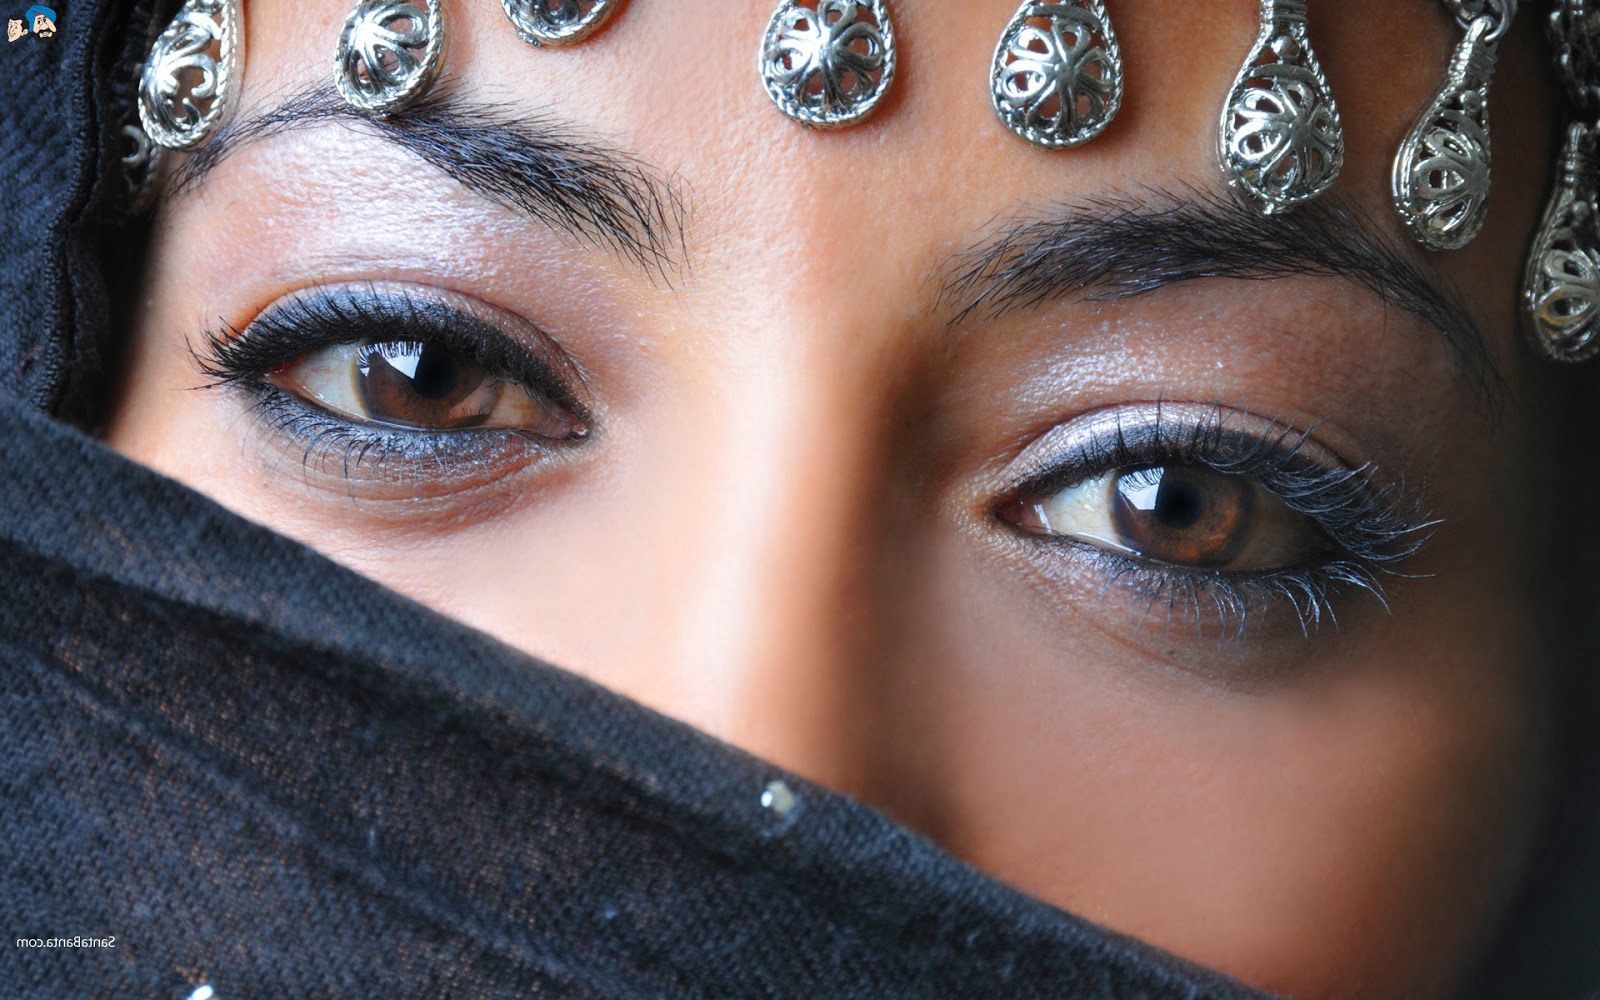 Design Muslimah Bercadar Cantik 9fdy Sebuah Dunia Kecilku Wallpaper Wanita Cantik Muslimah